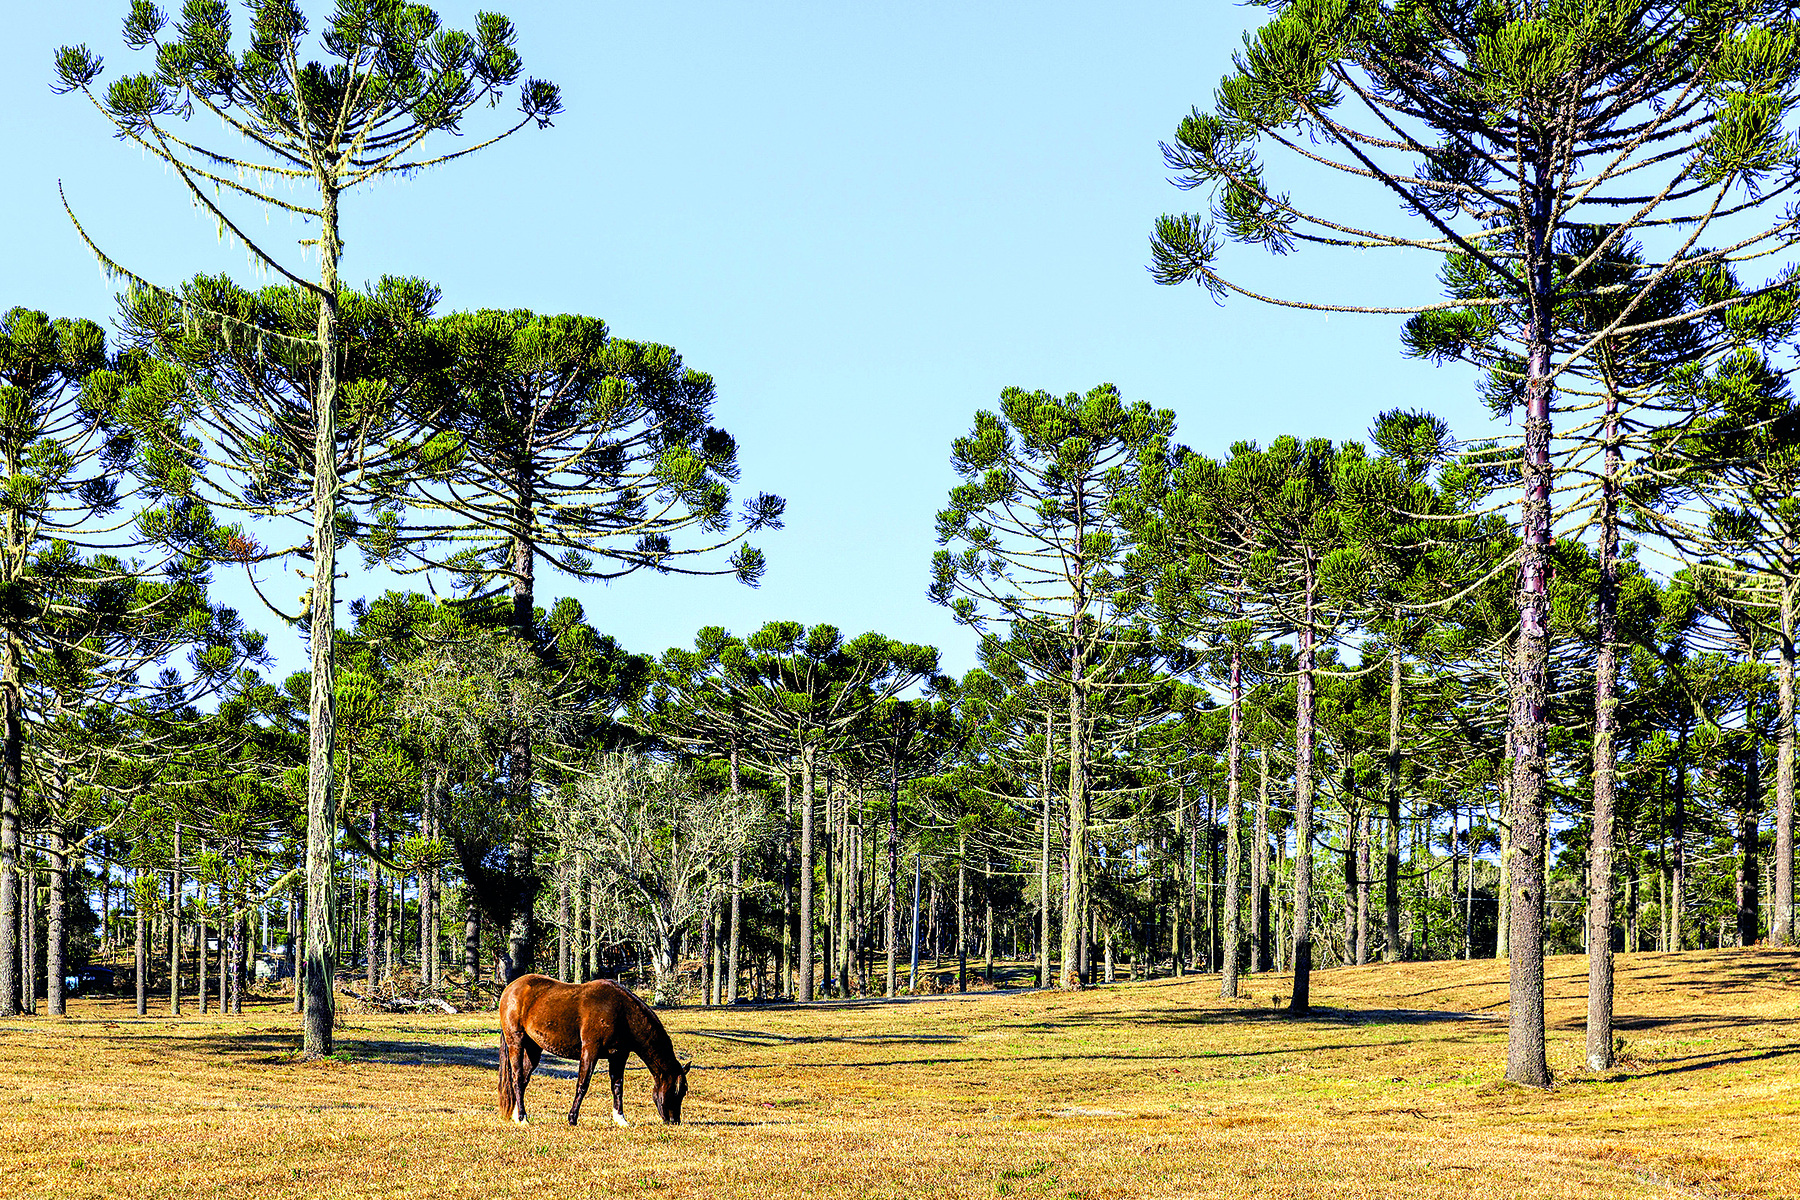 Fotografia. Paisagem onde em primeiro plano um cavalo está pastando em um terreno plano. Ao fundo, concentração de árvores altas com o tronco fino e galhos longos e curvos.